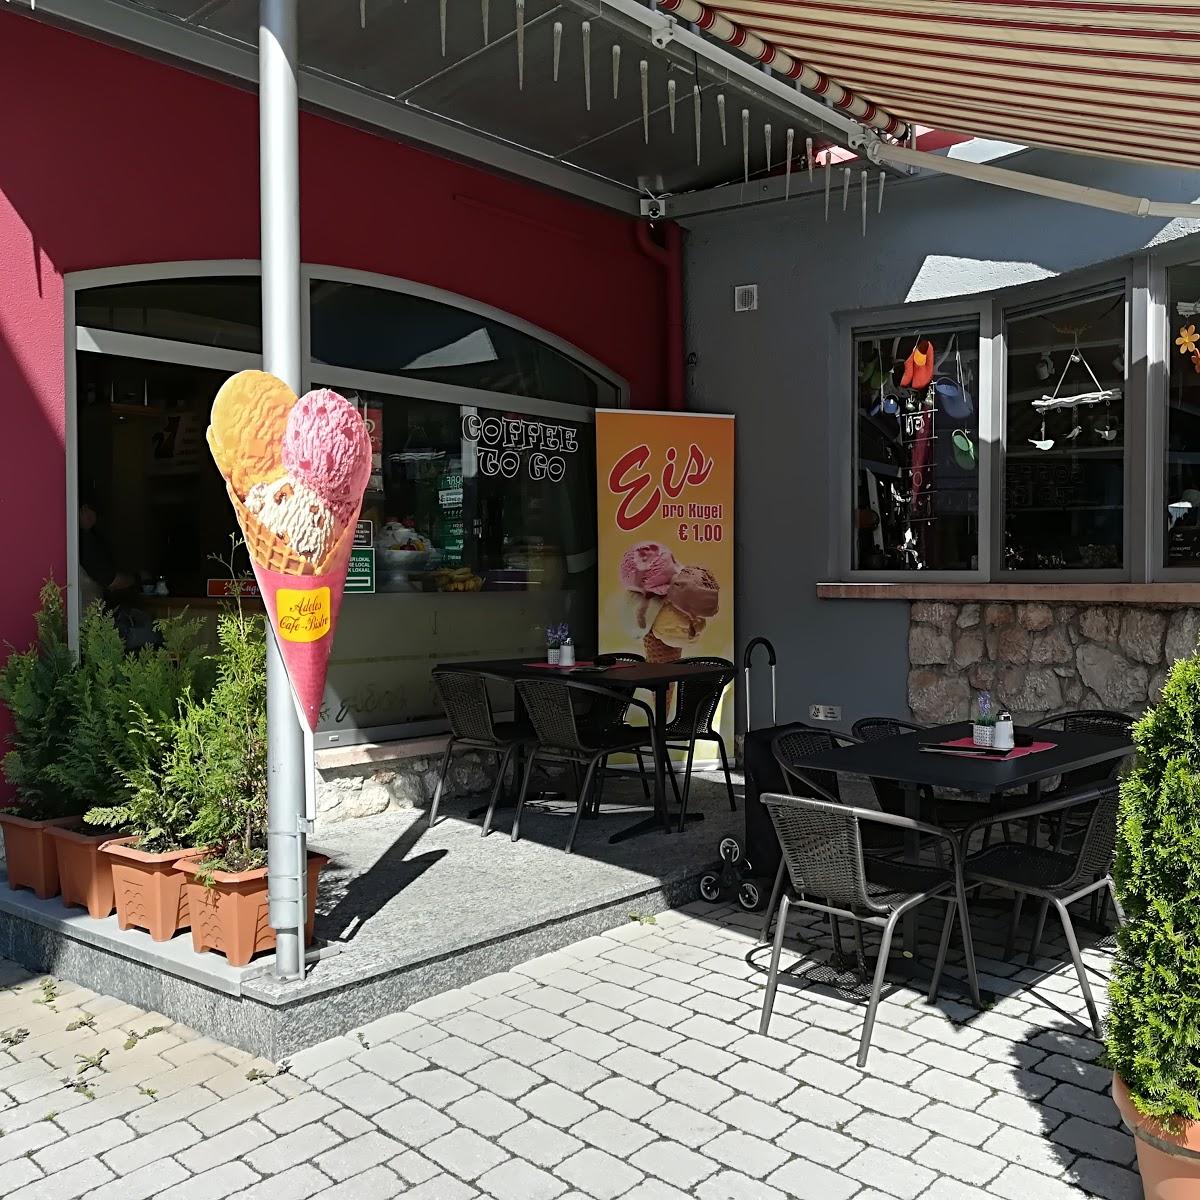 Restaurant "Connys Cafe" in Kirchberg in Tirol